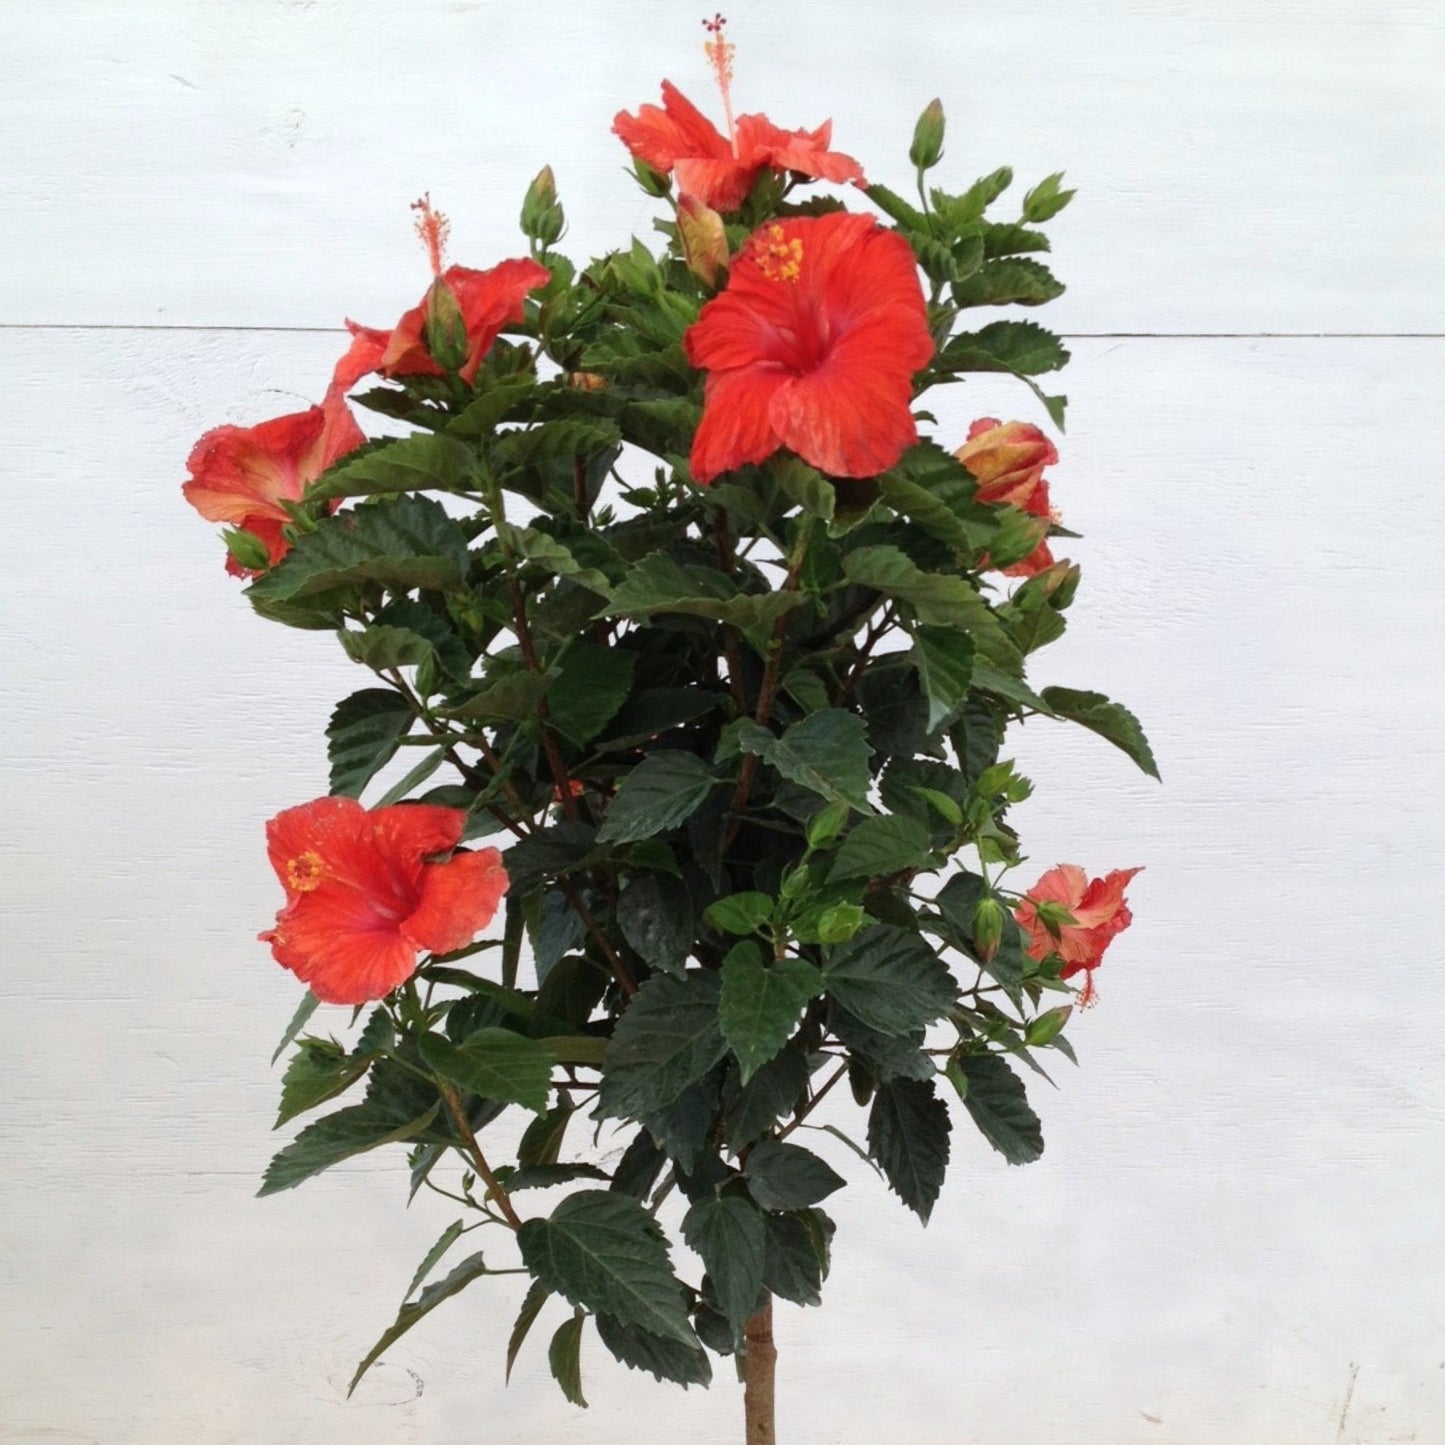 Hibiscus Rose de Chine